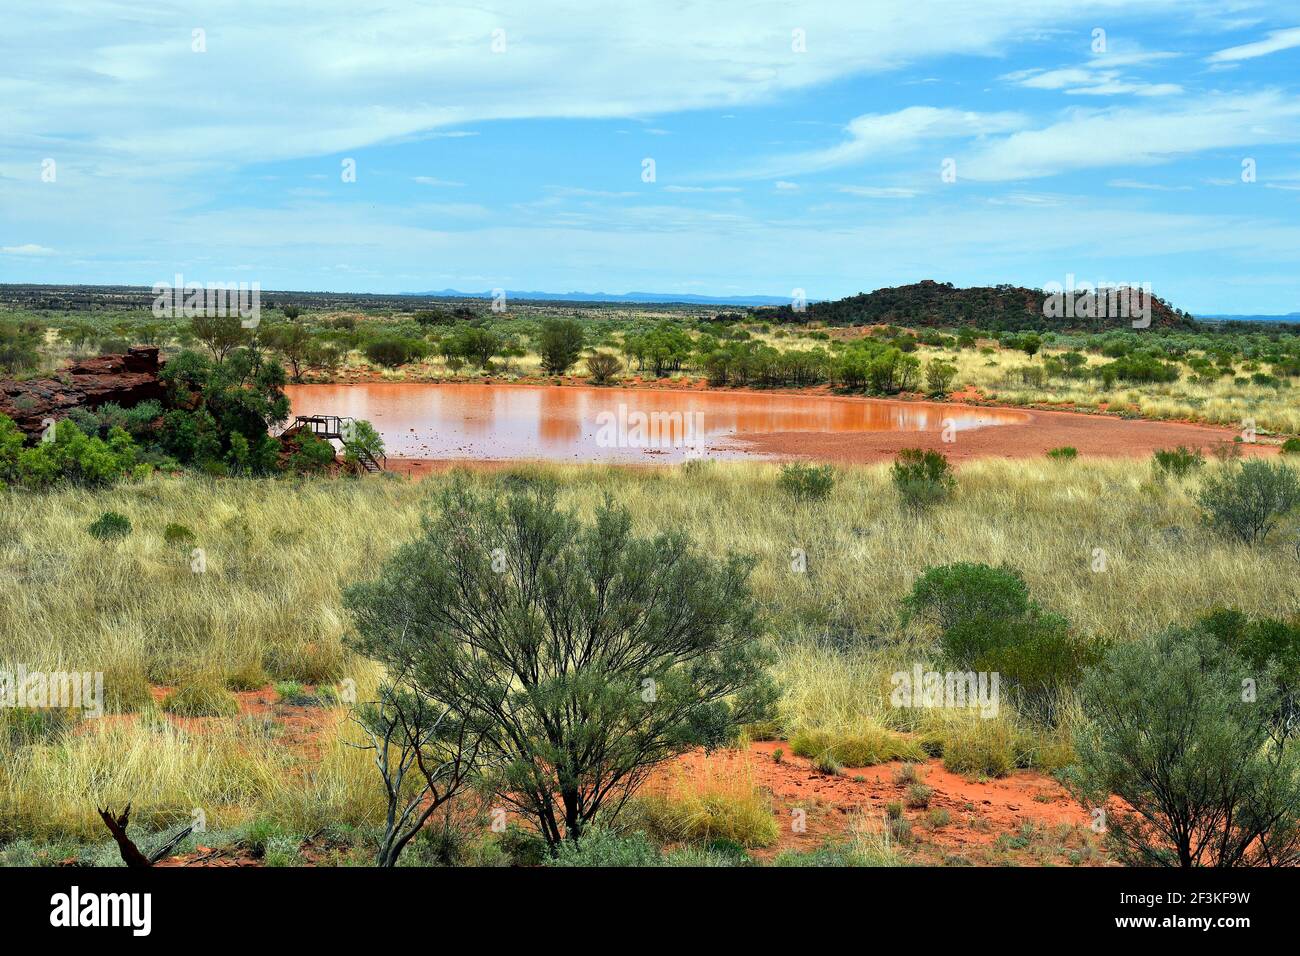 Australie, territoire du Nord, réserve de conservation publique d'Ewaninga, zone avec gravures préhistoriques Banque D'Images